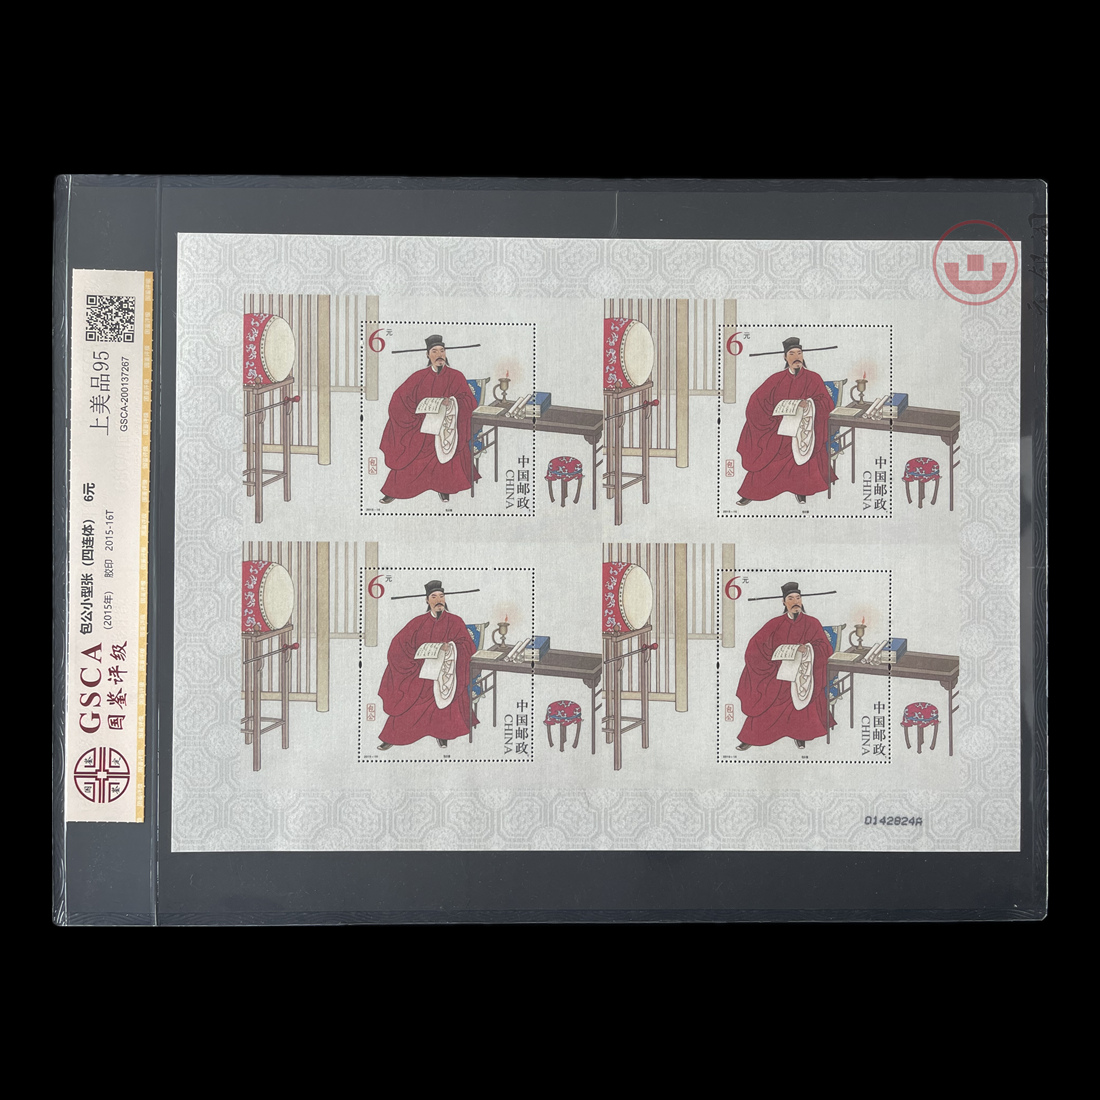 2015-16《包公》特种邮票丝绸小型张四连体